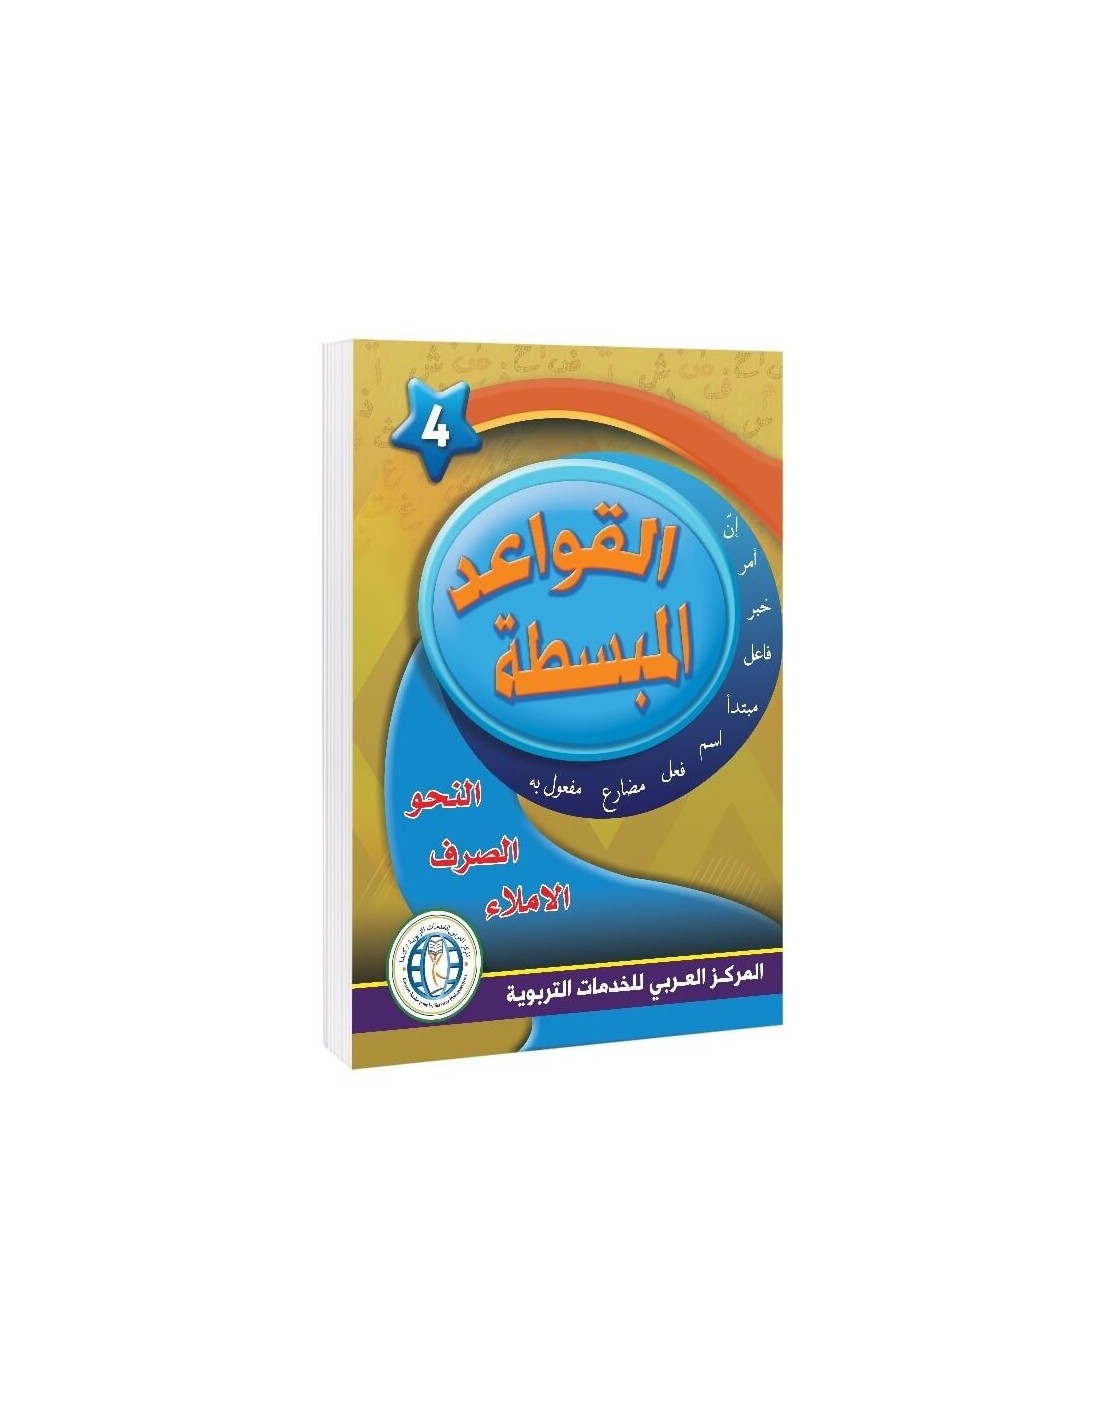 In the Arabic Language Garden - Easy Grammar: Level 4 - في حديقة اللغة العربية